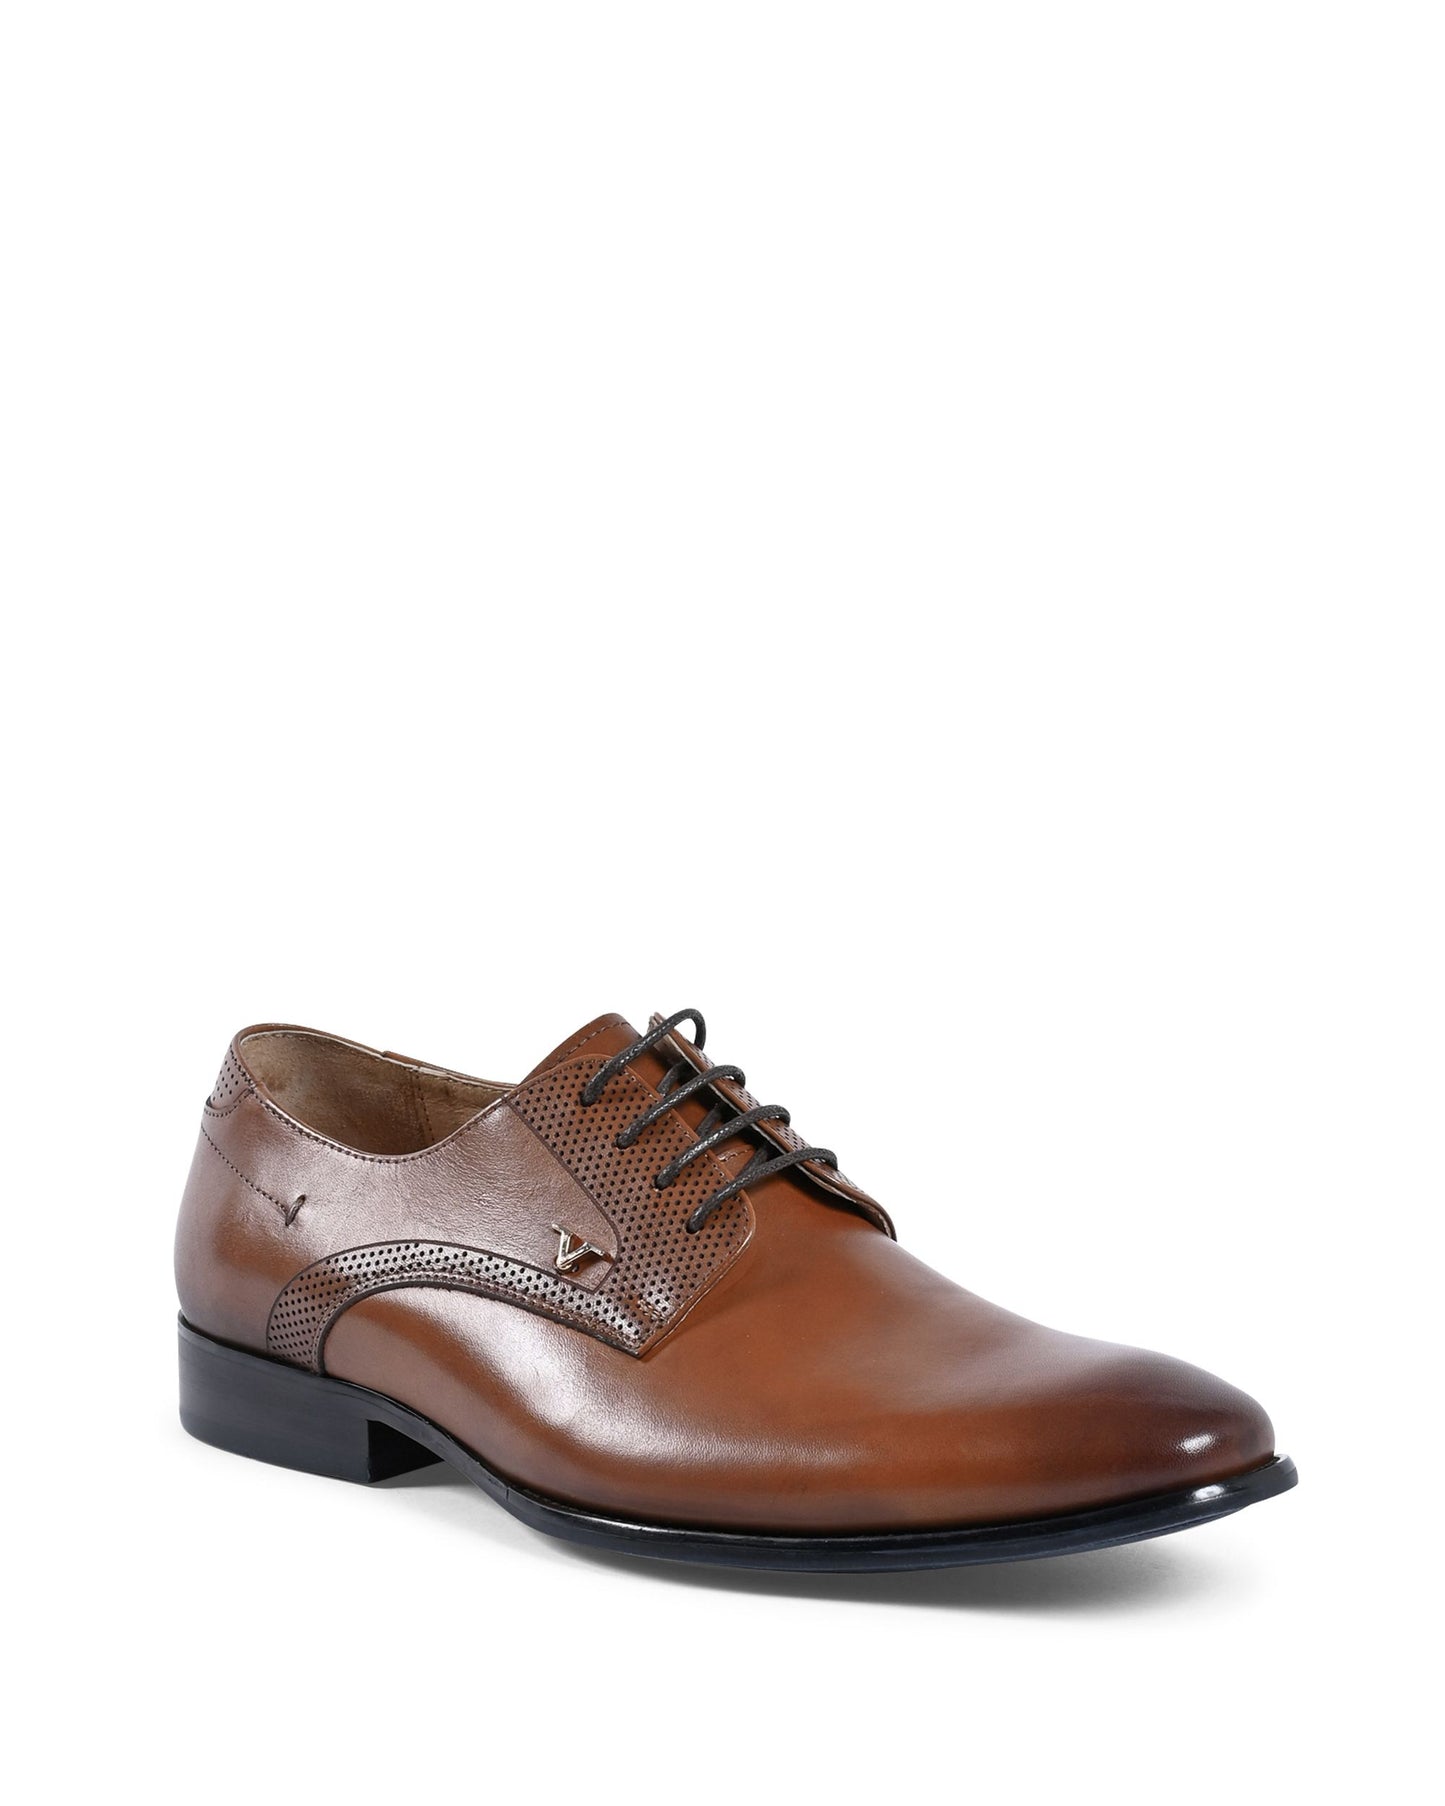 19V69 Italia Mens Classic Shoes Brown YO X9005-1 TOBACCO